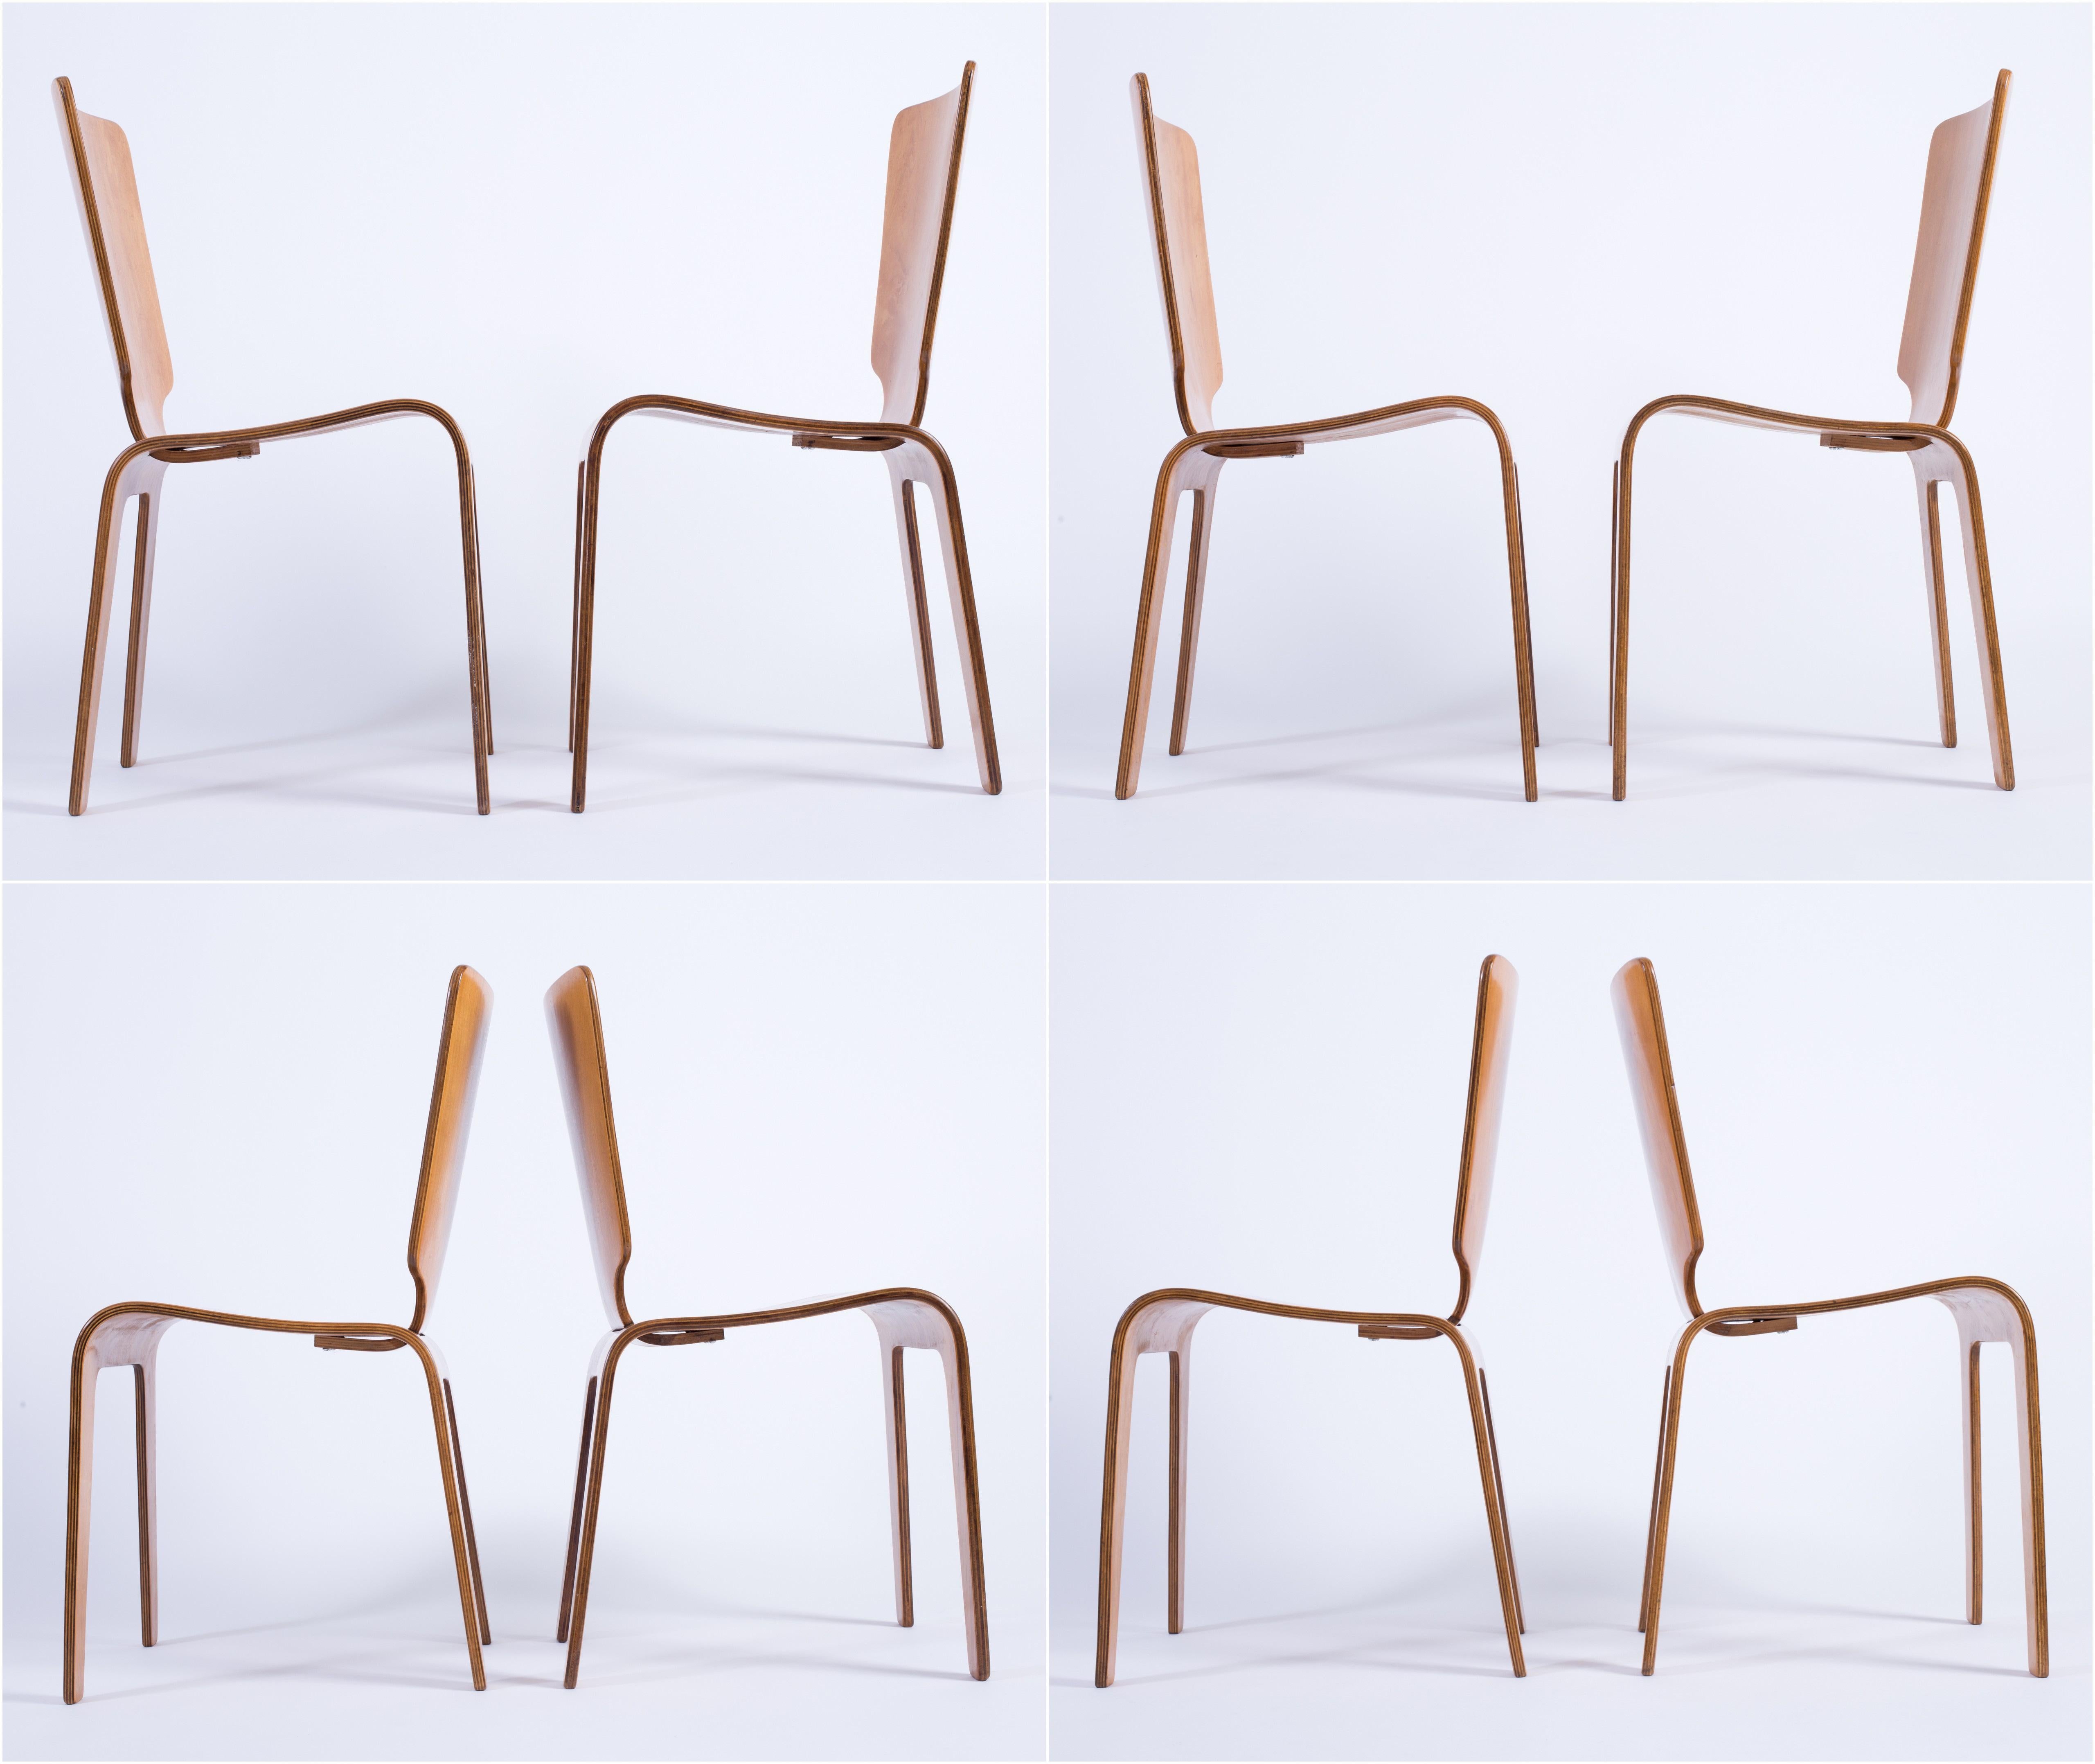 Thaden-Jordan 1940’s Herbert Von Thaden Mid-Century Modern Table/Chairs 5pc Set In Good Condition For Sale In Thiensville, WI